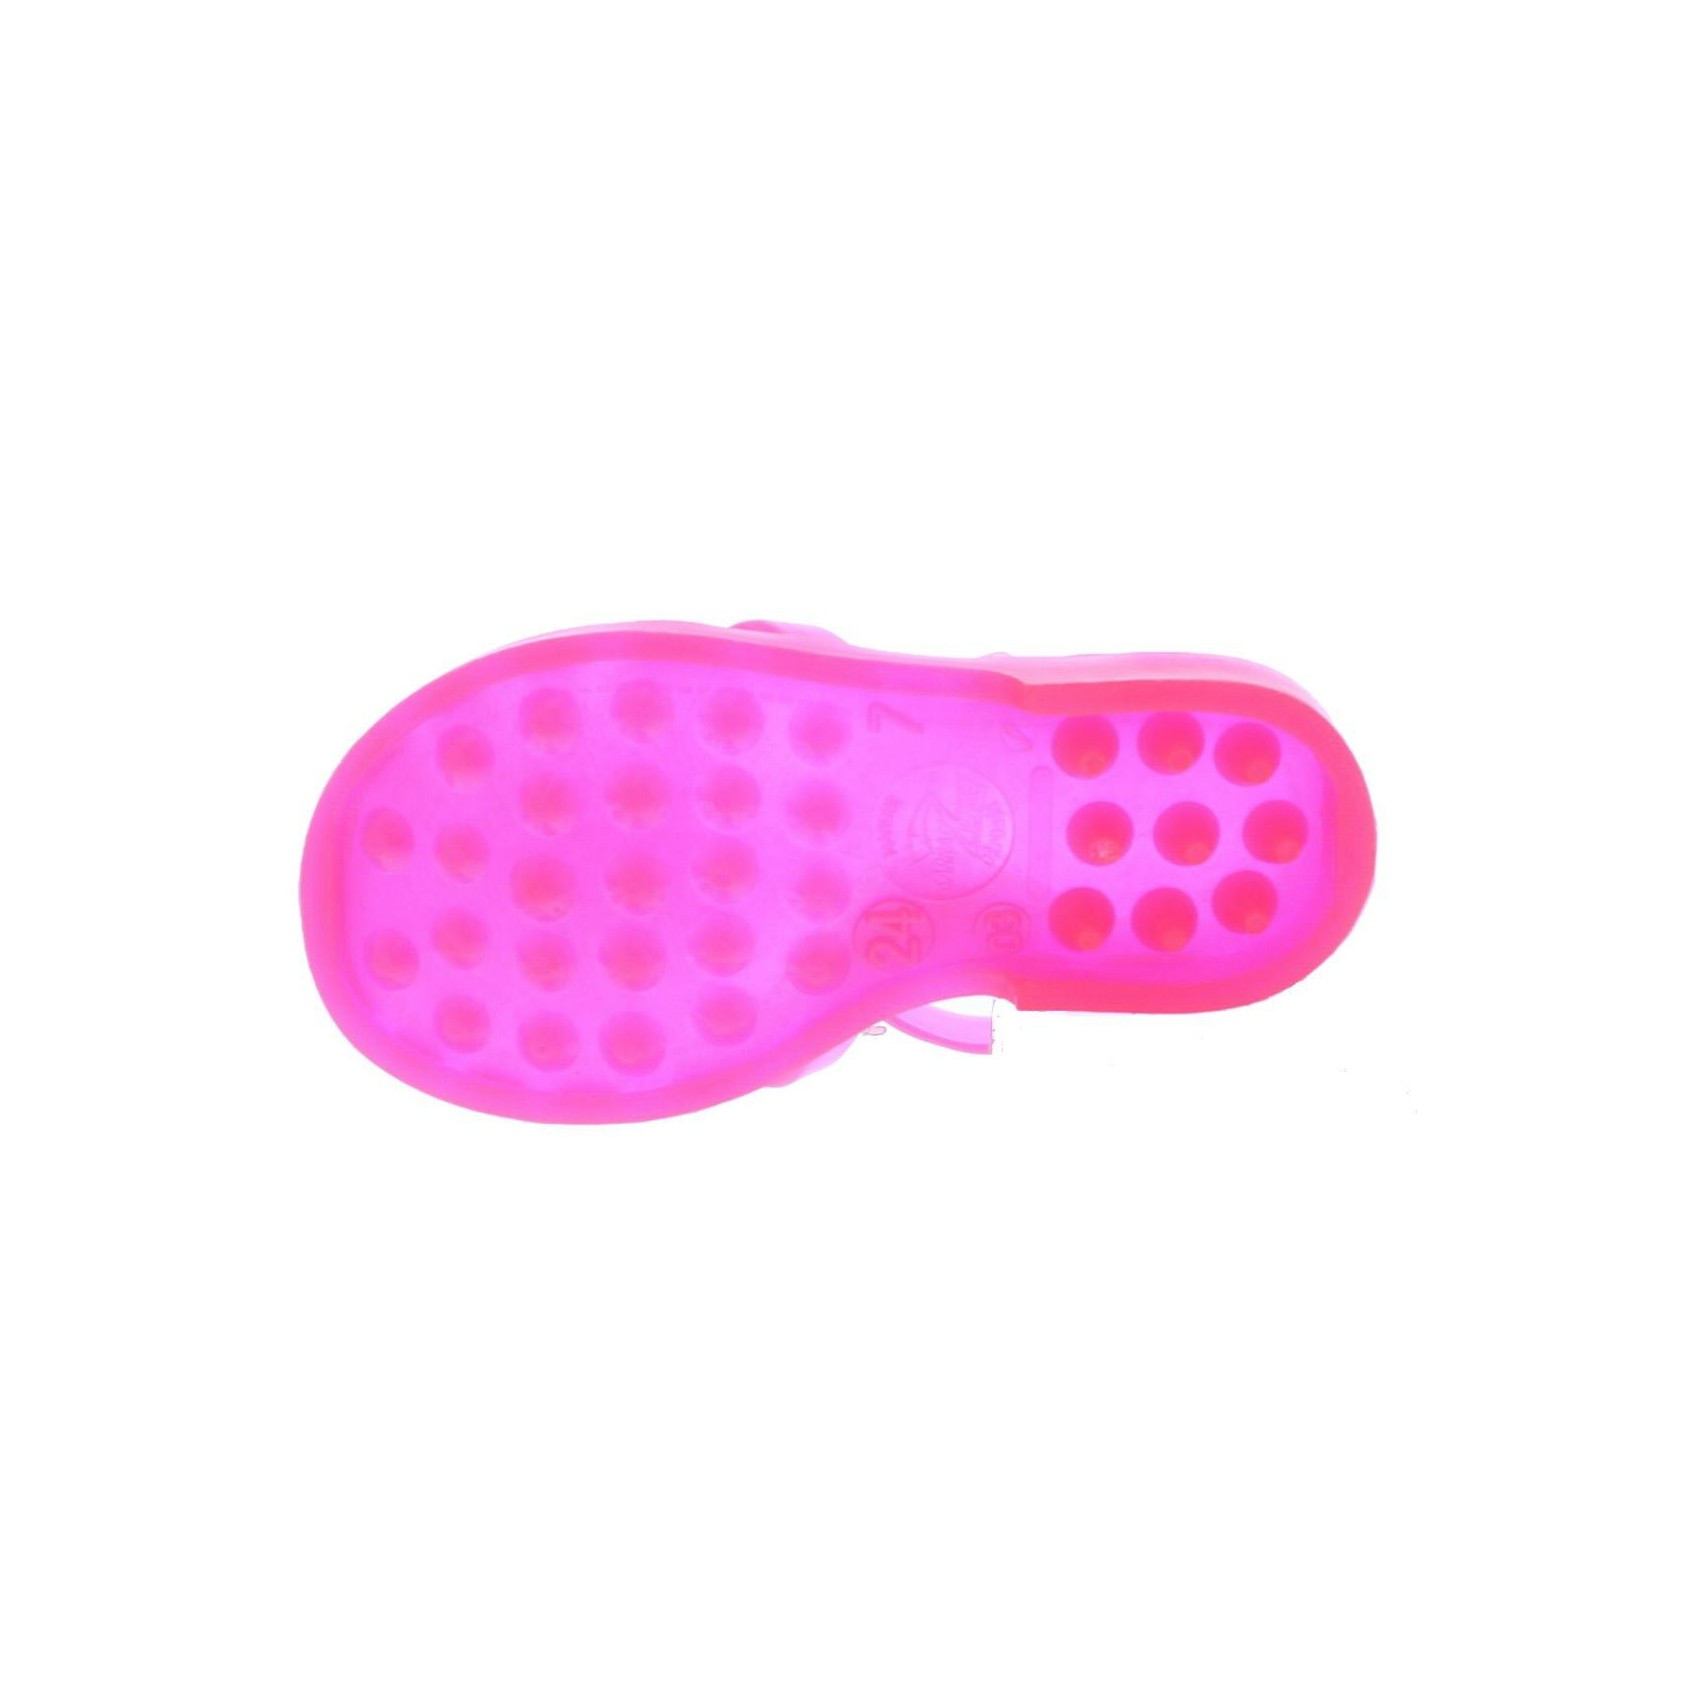 ...  Accessoires  Chaussure  Sandales fille en plastique rose fluo